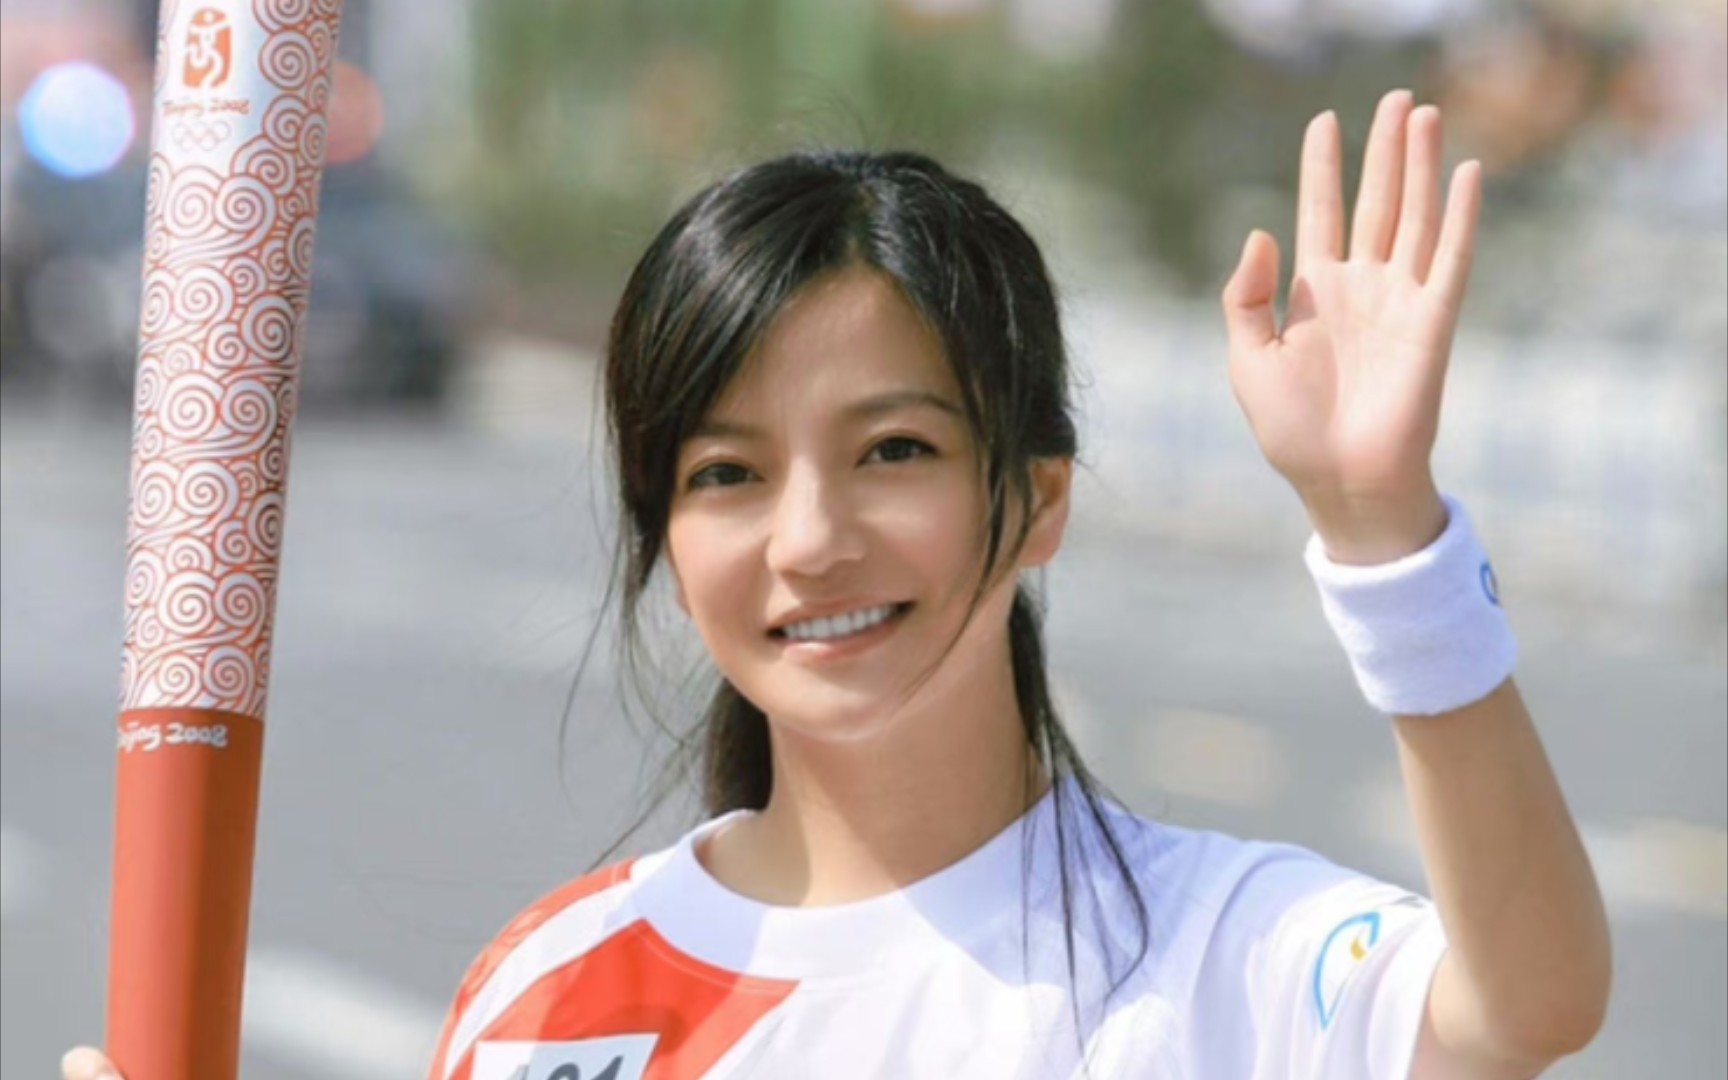 赵薇2008年安徽芜湖首位奥运圣火火炬手，为奥运圣火能够在家乡传递倍感骄傲